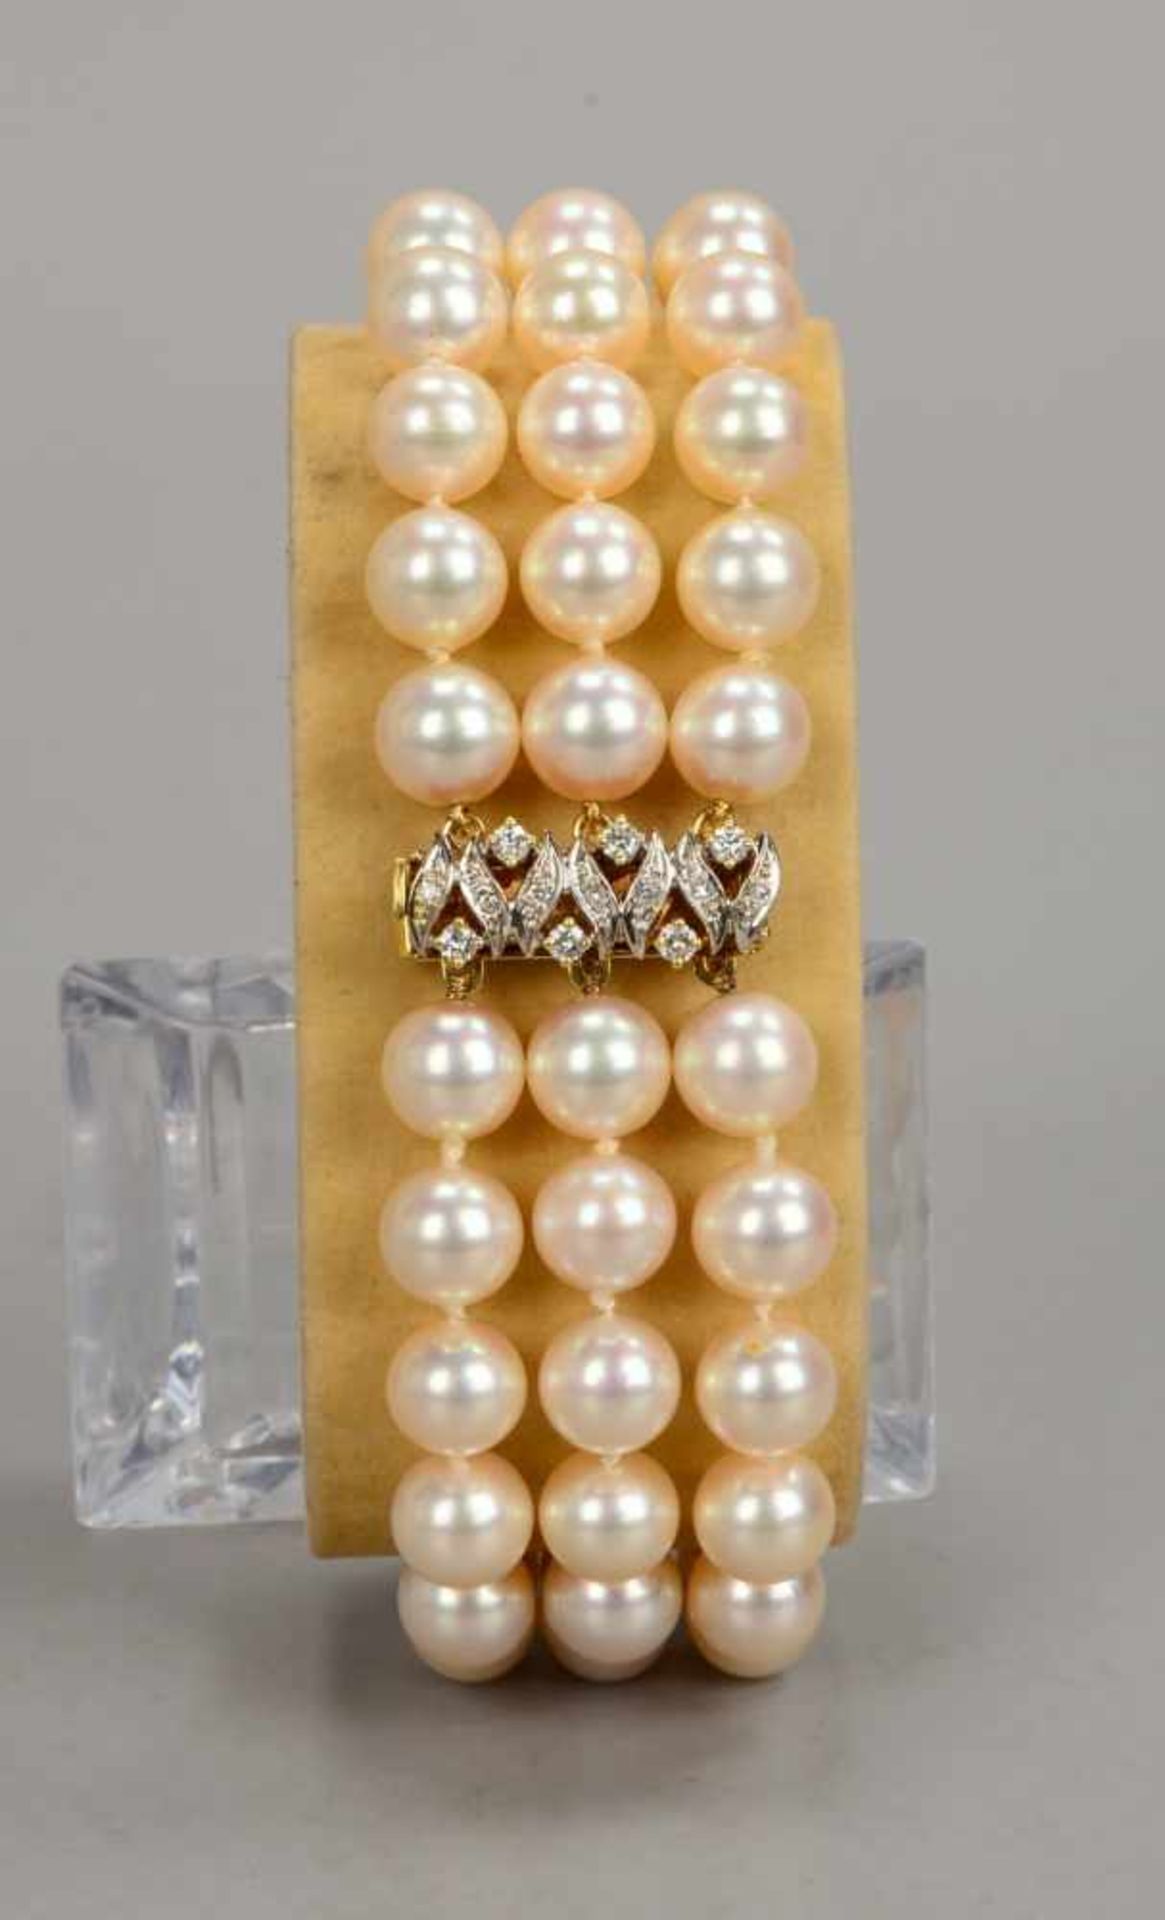 Zuchtperlen-Armband, 3-reihig, Perlendurchmesser Ø 8 mm, Perlen mit gutem Lüster, mit 585 GG-